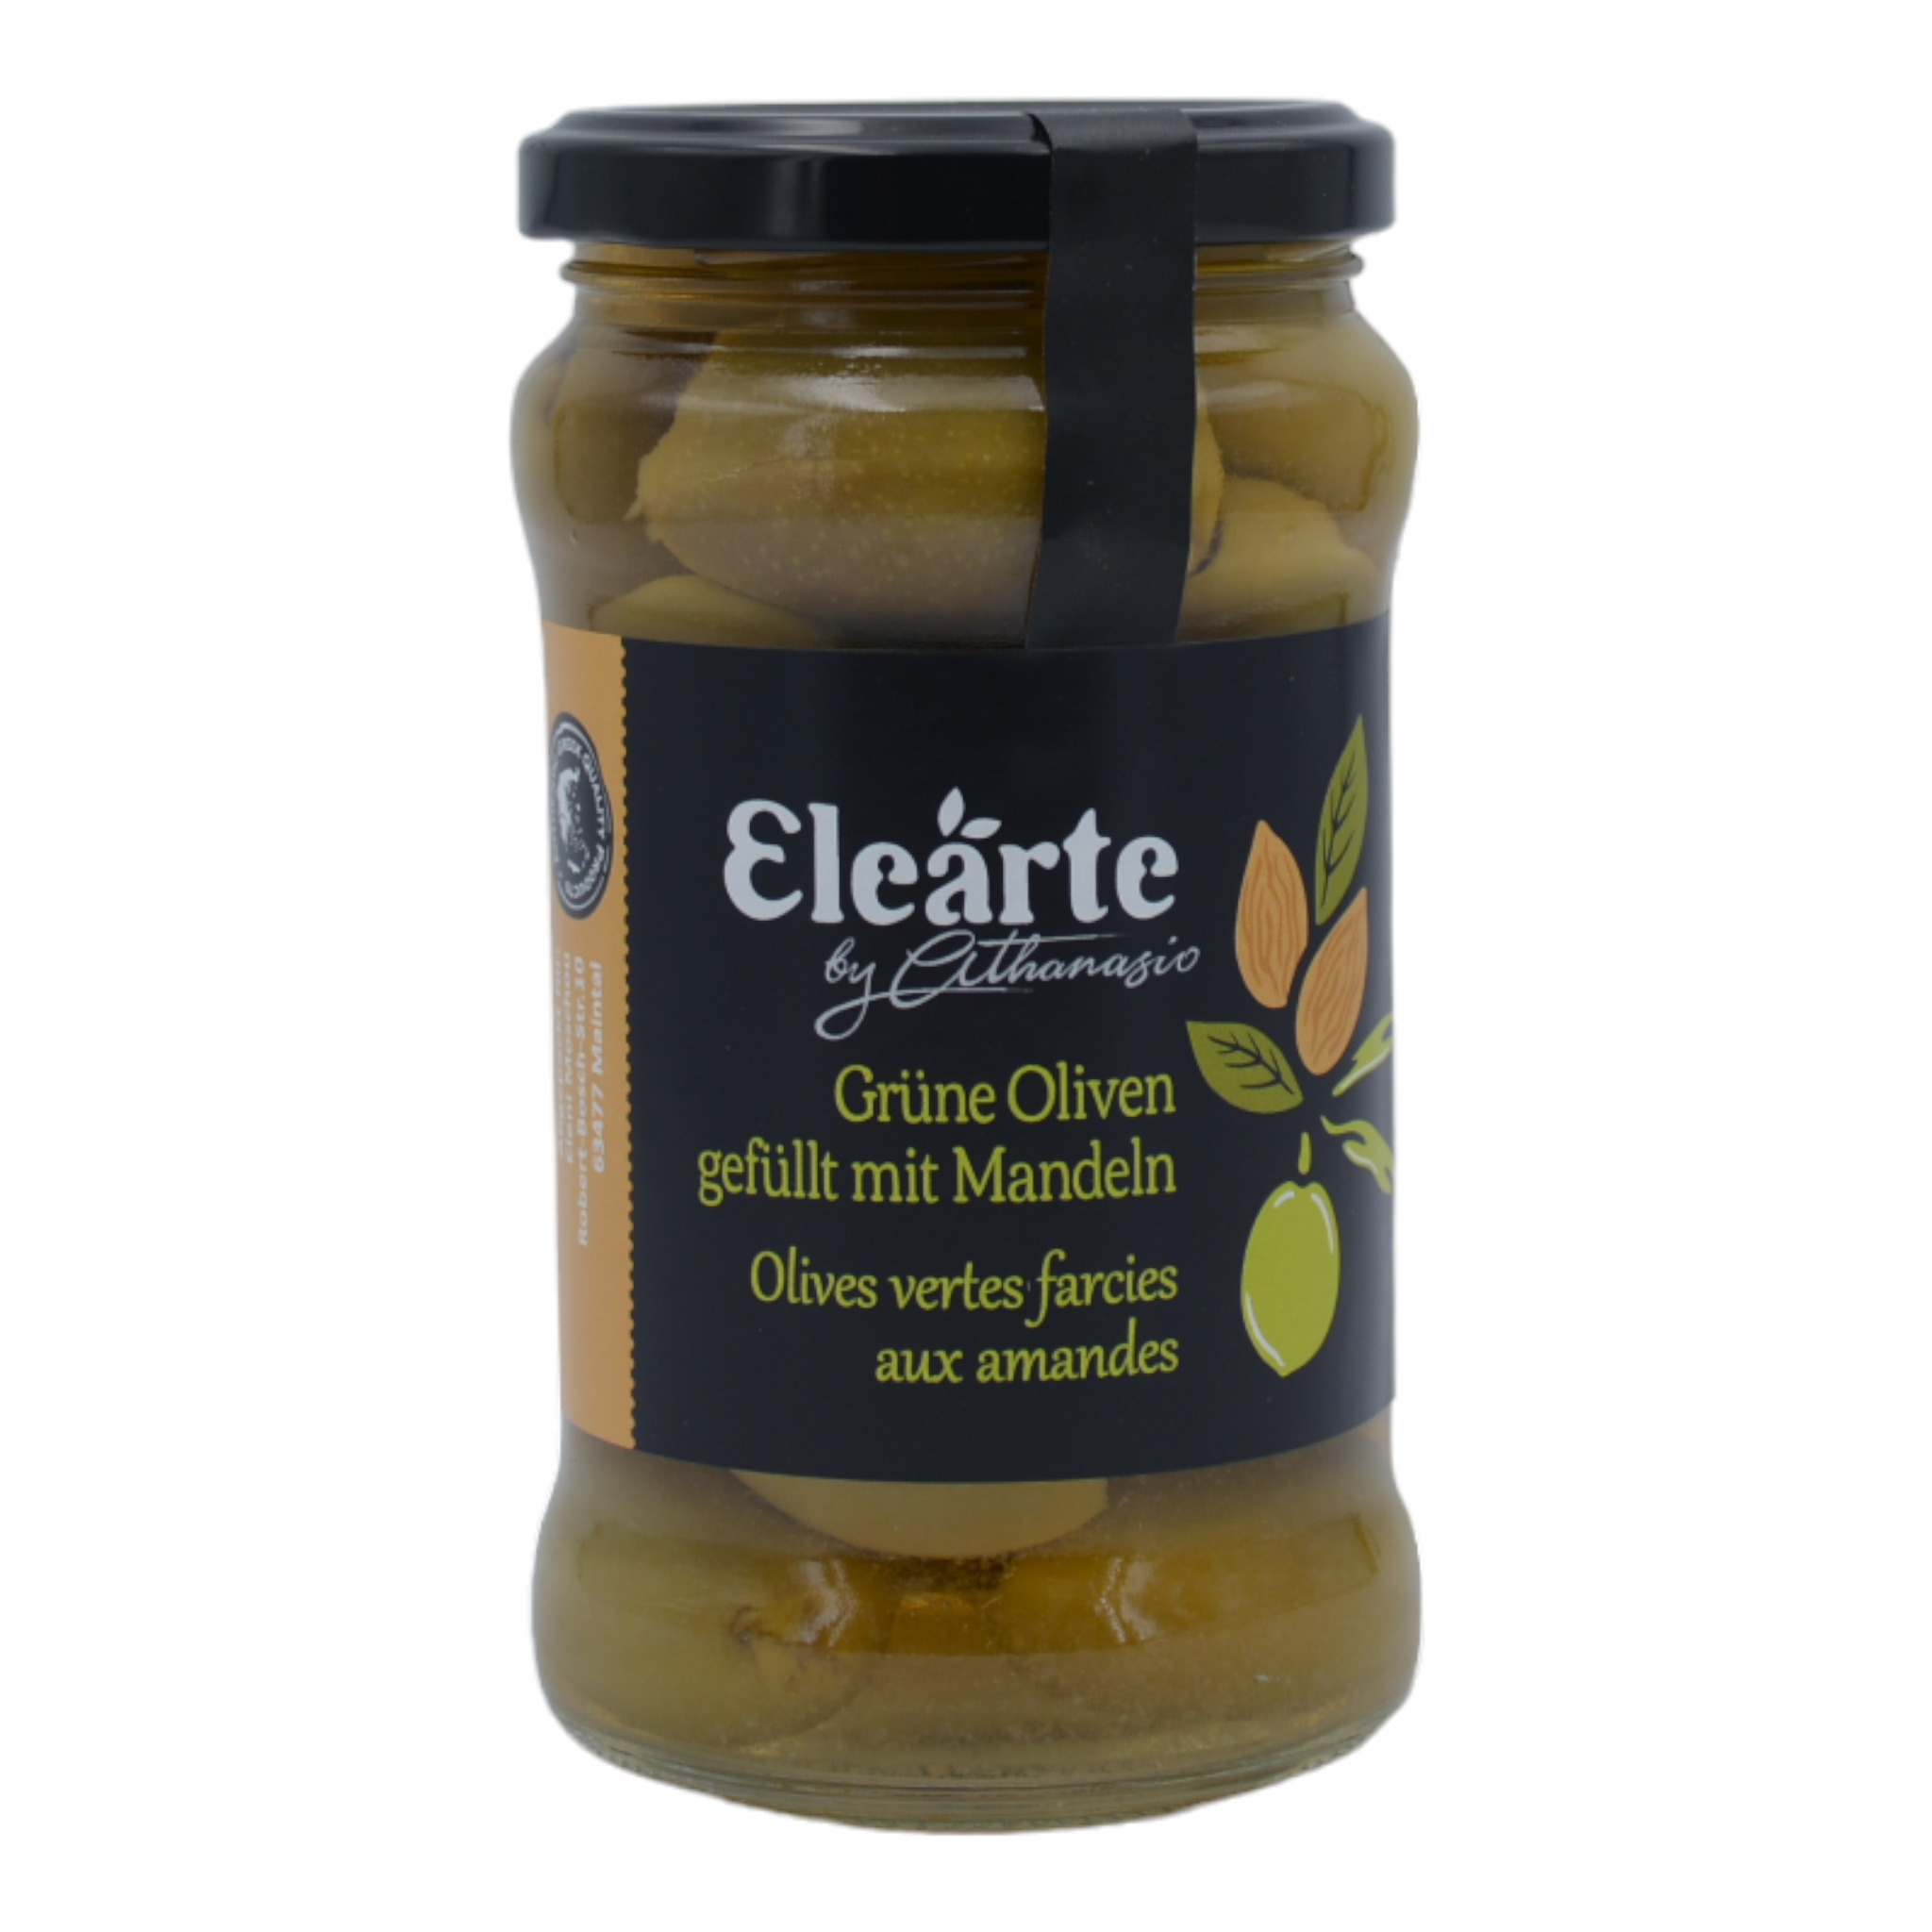 5200250212214Athanasio Elearte Grüne Oliven gefüllt mit Mandeln f